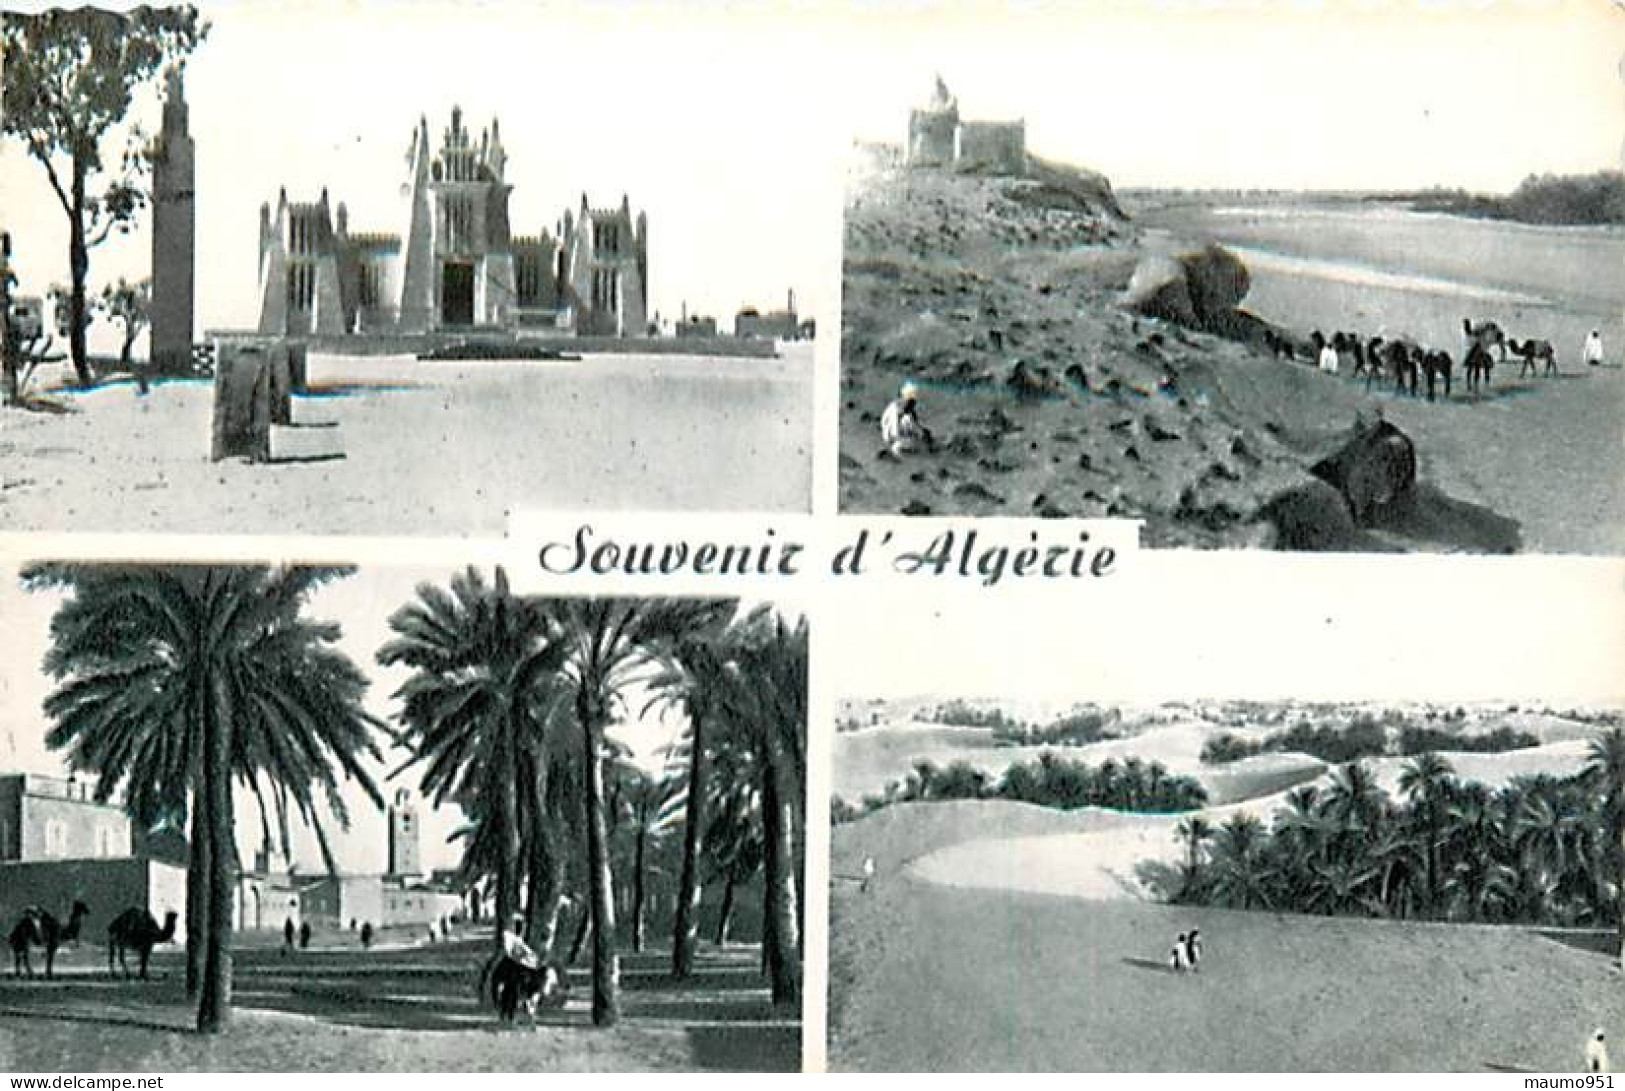 ALGERIE -  Souvenir d'Alger. Lot de 7 Cartes